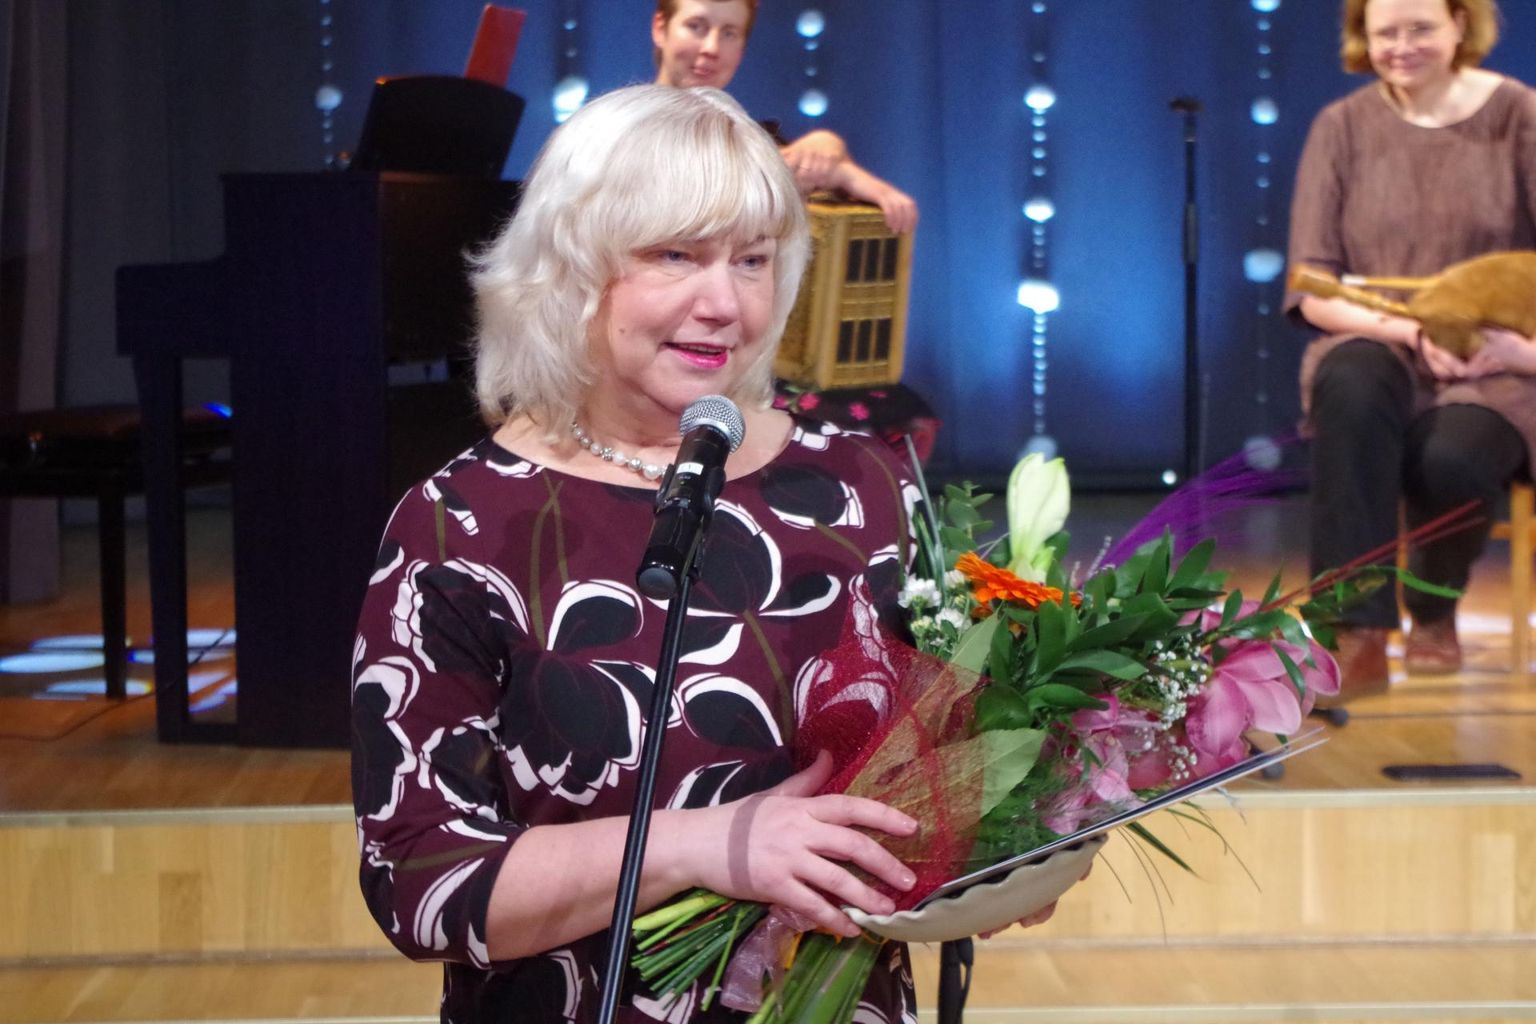 Kultuurkapitali Võrumaa ekpertgrupi aastapreemiate galal kuulutati Kultuuripärliks helilooja ja koolijuht Piret Rips-Laul. 